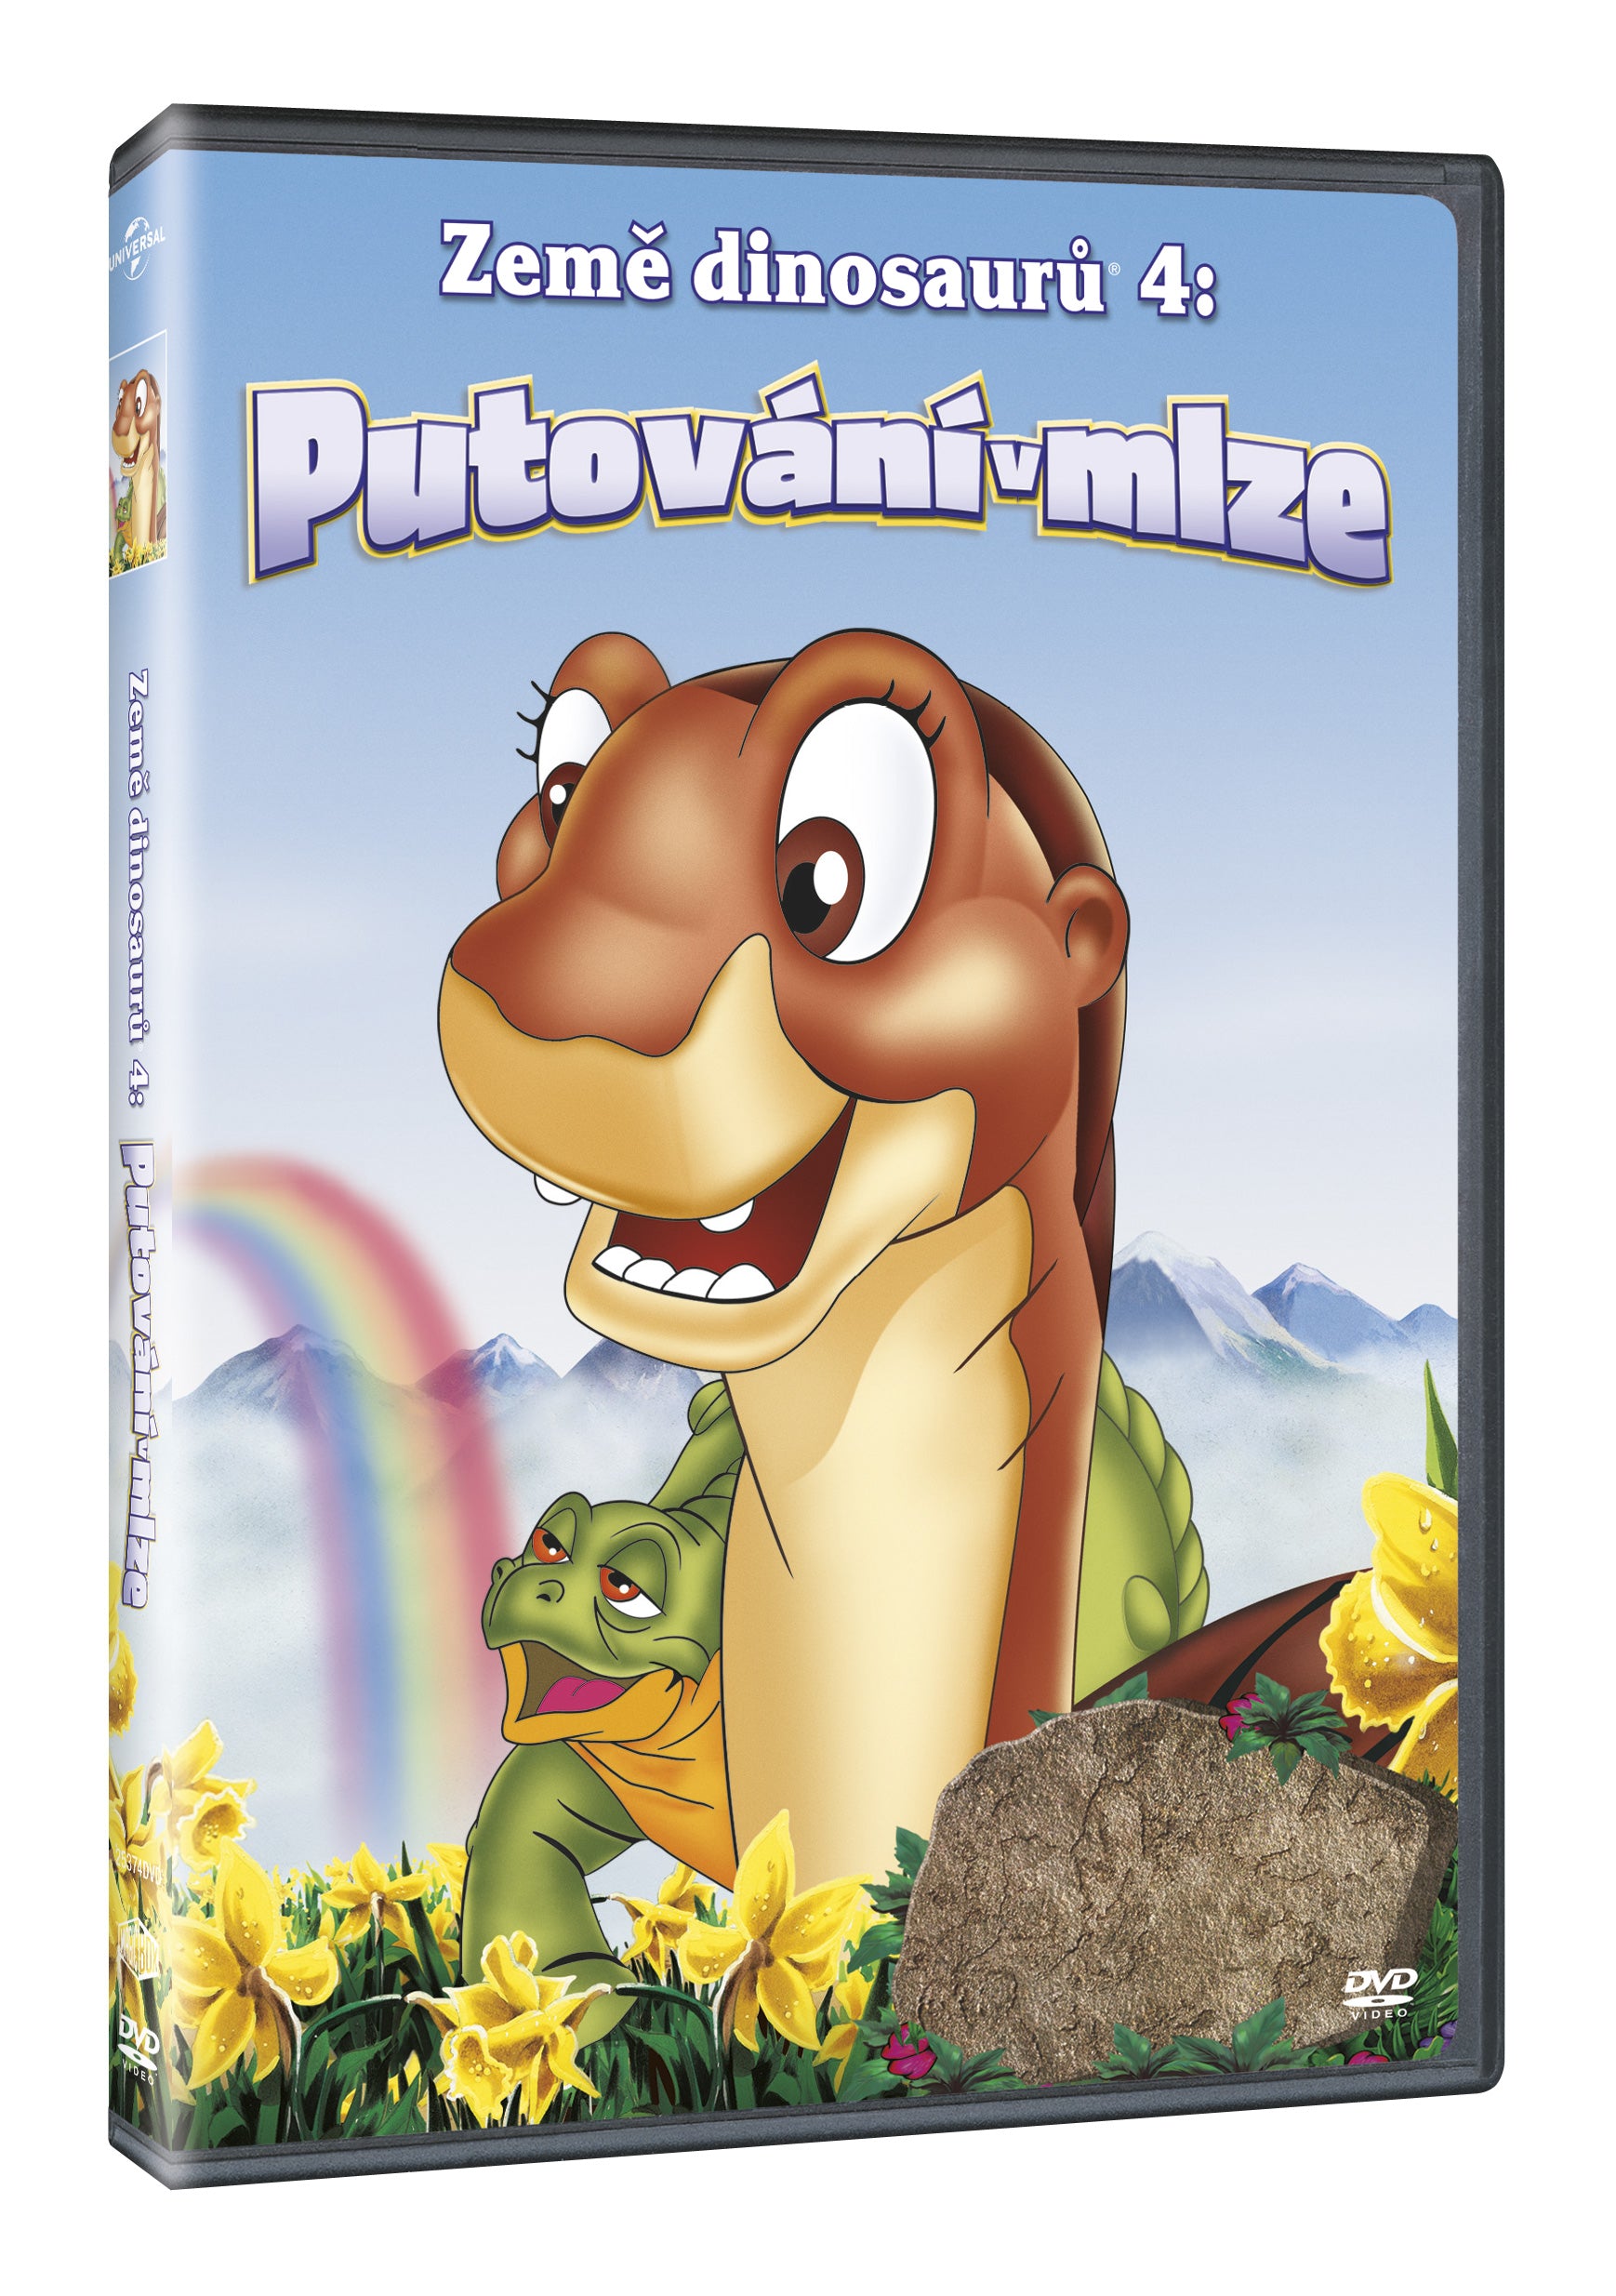 Zeme Dinosauru 4: Putovani v mlze DVD / In einem Land vor unserer Zeit IV: Reise durch die Nebel